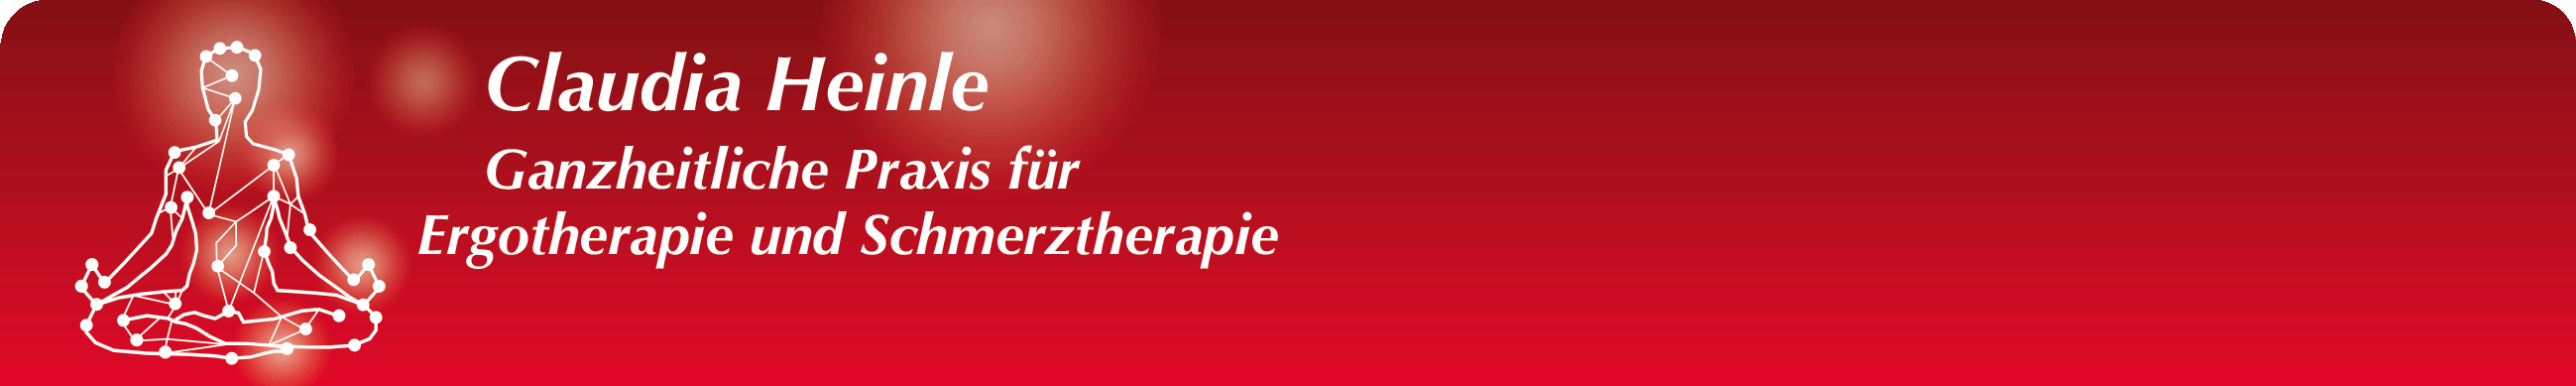 Claudia Heinle - Ganzheitliche Praxis für Ergotherapie und Schmerztherapie